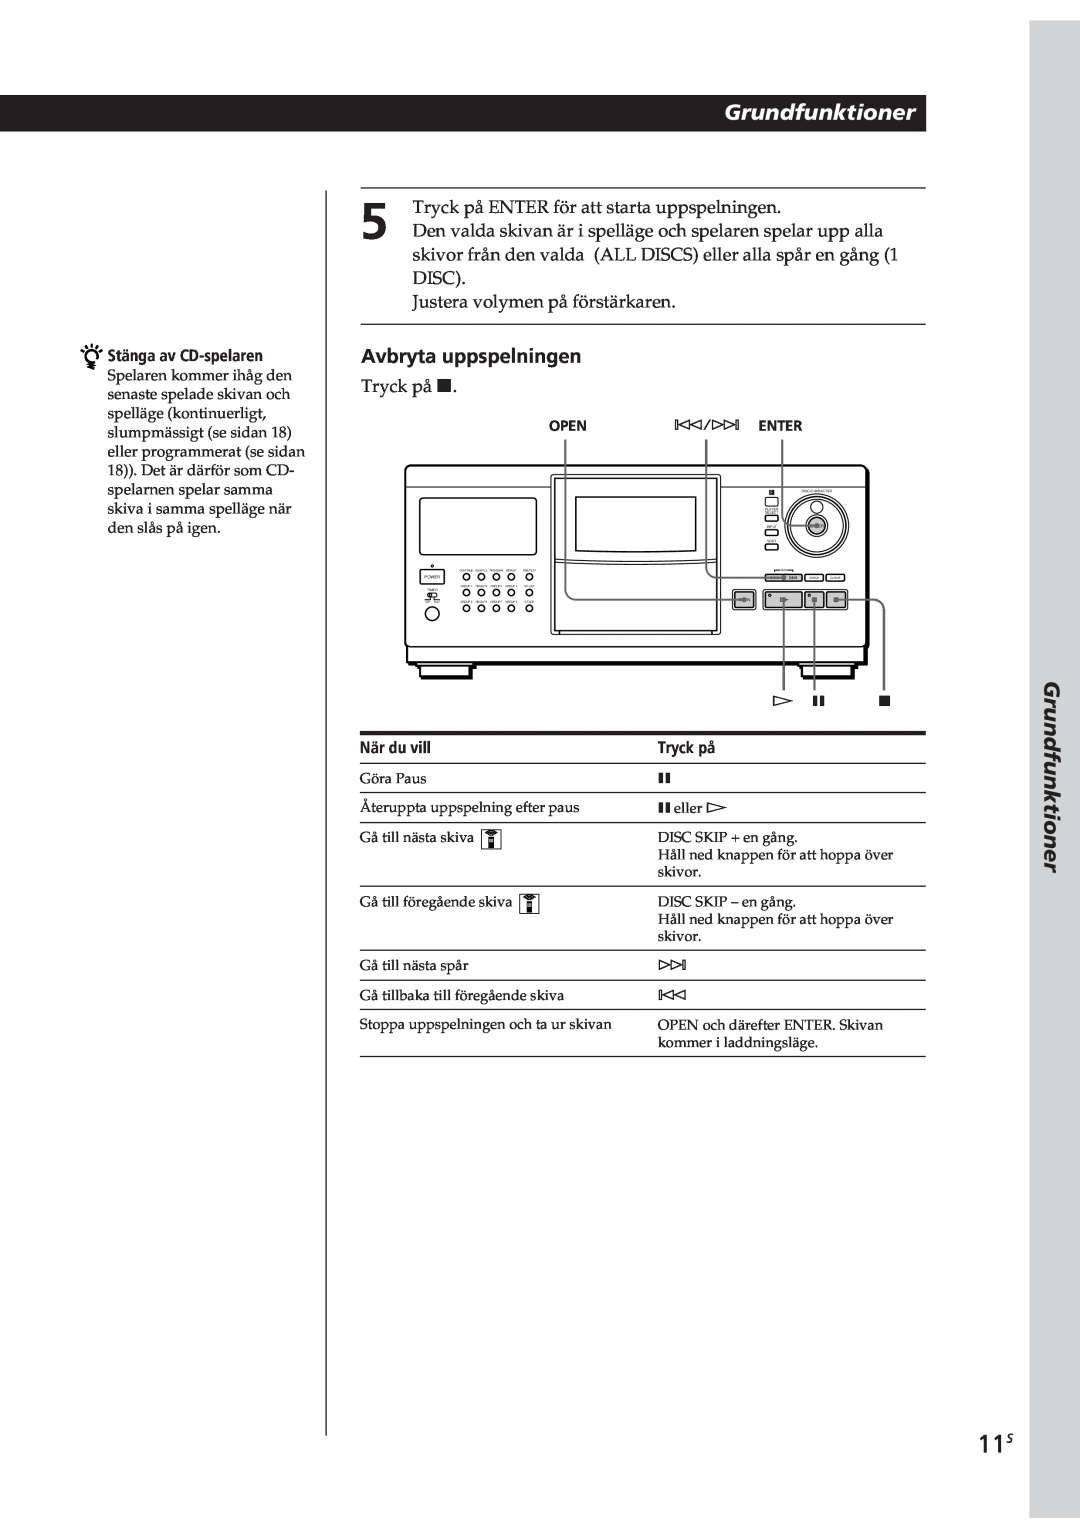 Sony CDP-CX90ES manual Grundfunktioner, Avbryta uppspelningen, Stänga av CD-spelaren, När du vill, Tryck på, Open-/± Enter 